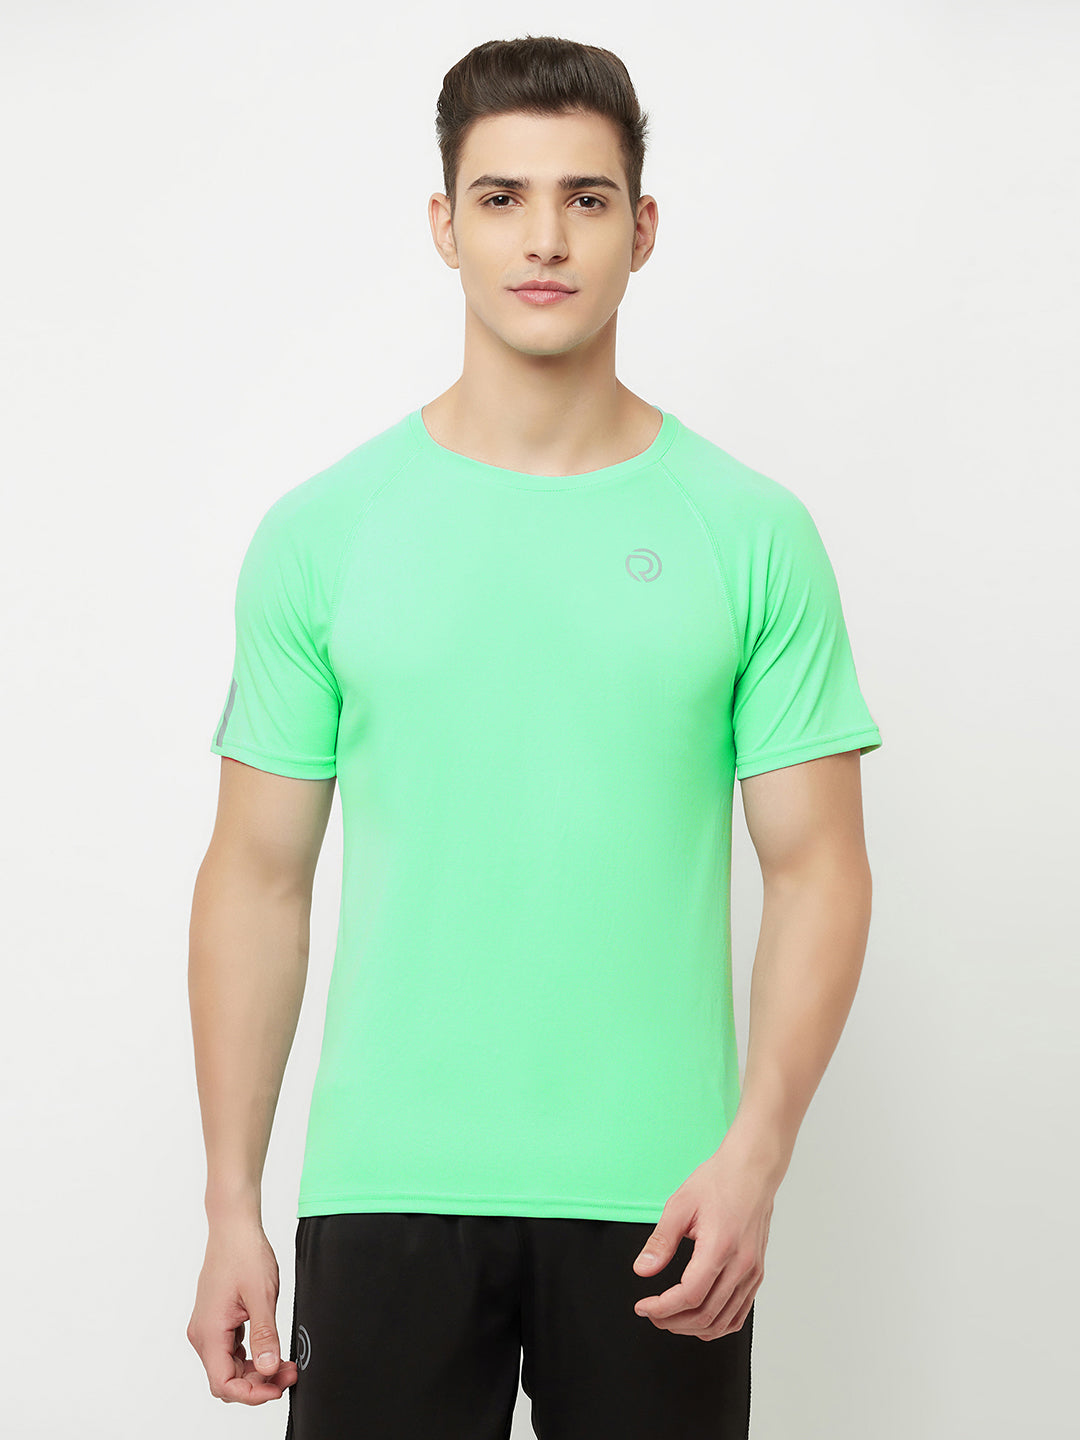 Ultra Light Dryfit Running & Training Tshirt